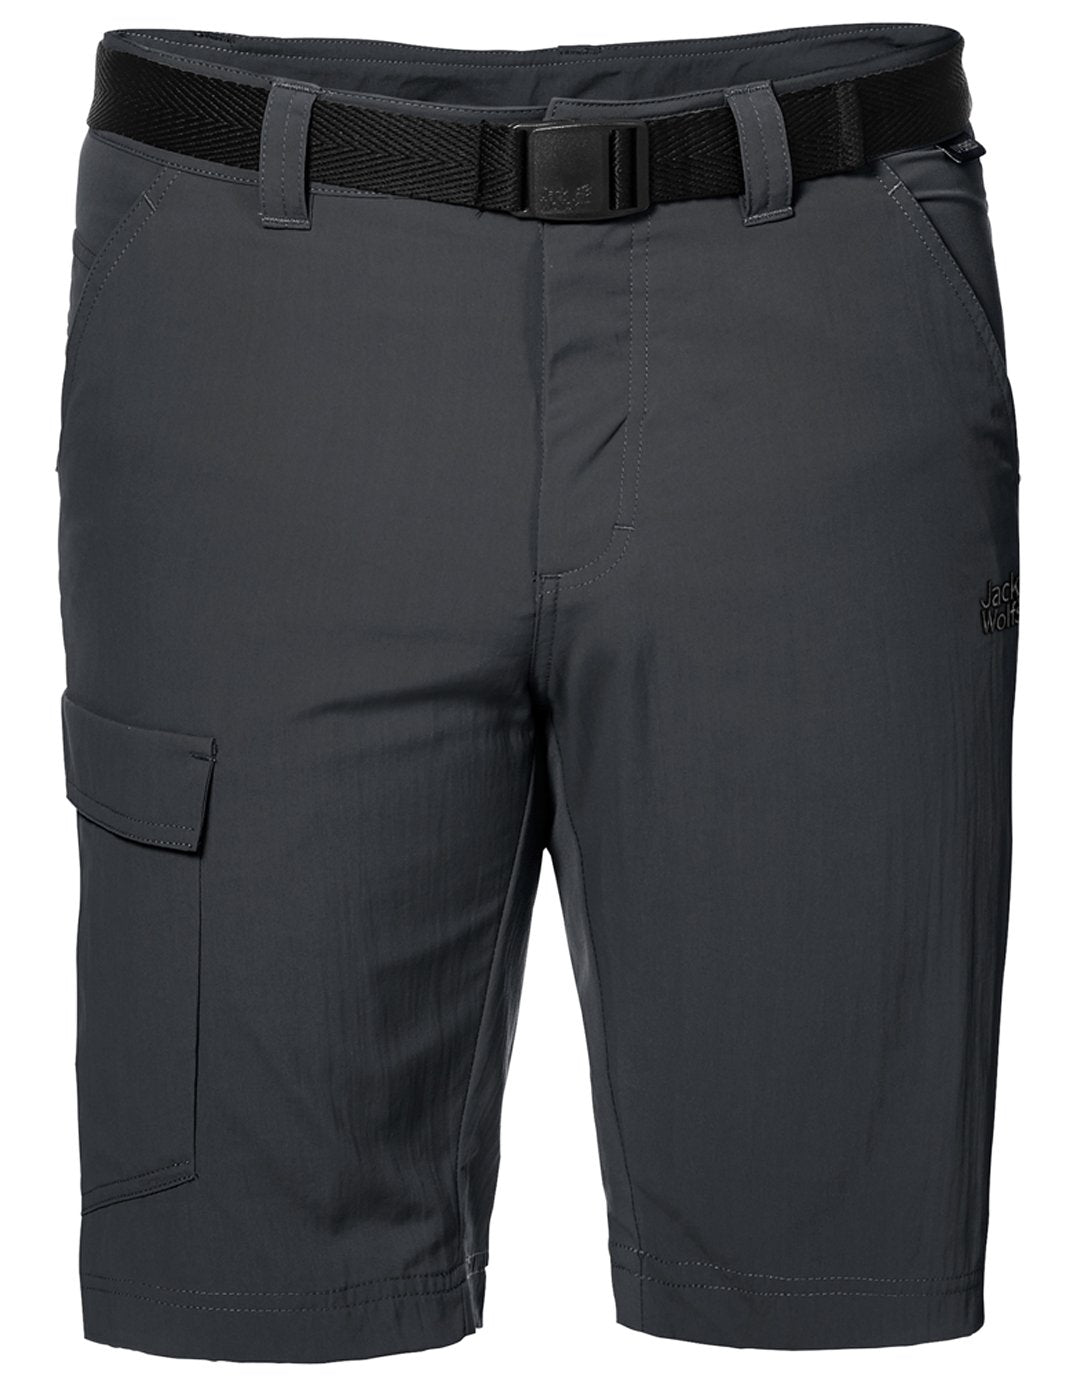 Mens Hoggar Shorts - Phantom - UK Size 36 Grey